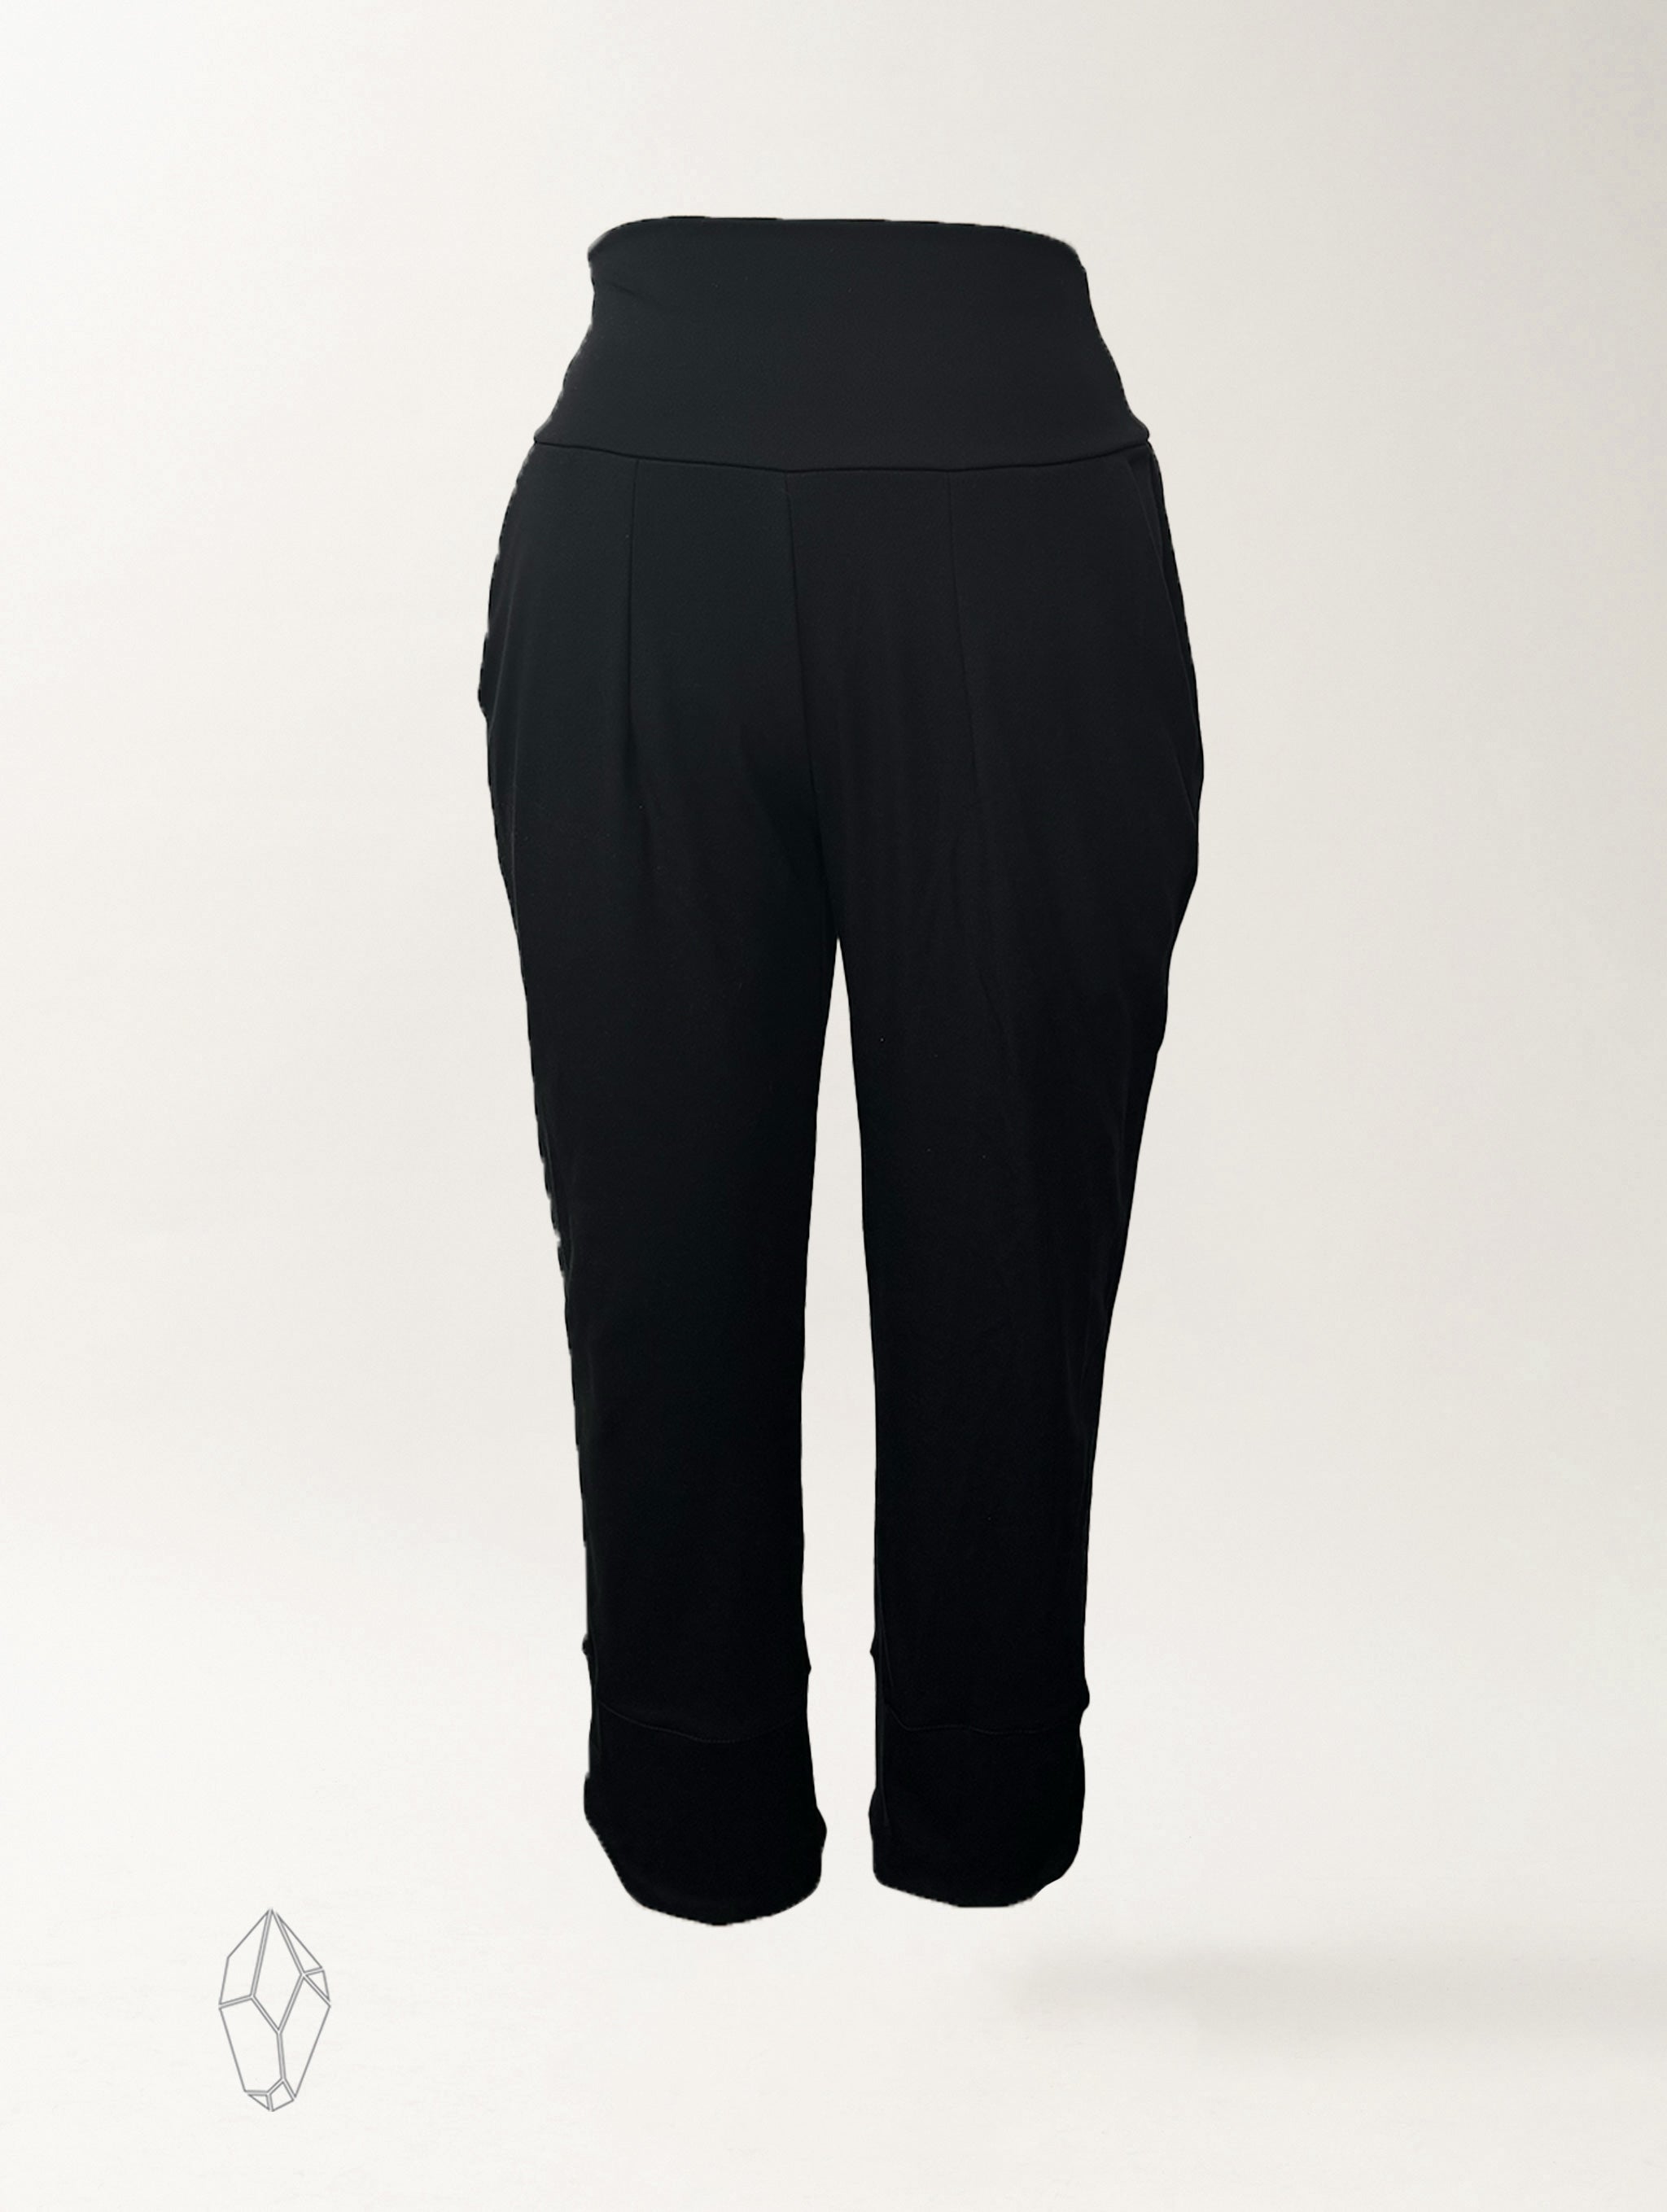 Brilliant Basics Women's Ponte Jogger Pant - Black - Size Large